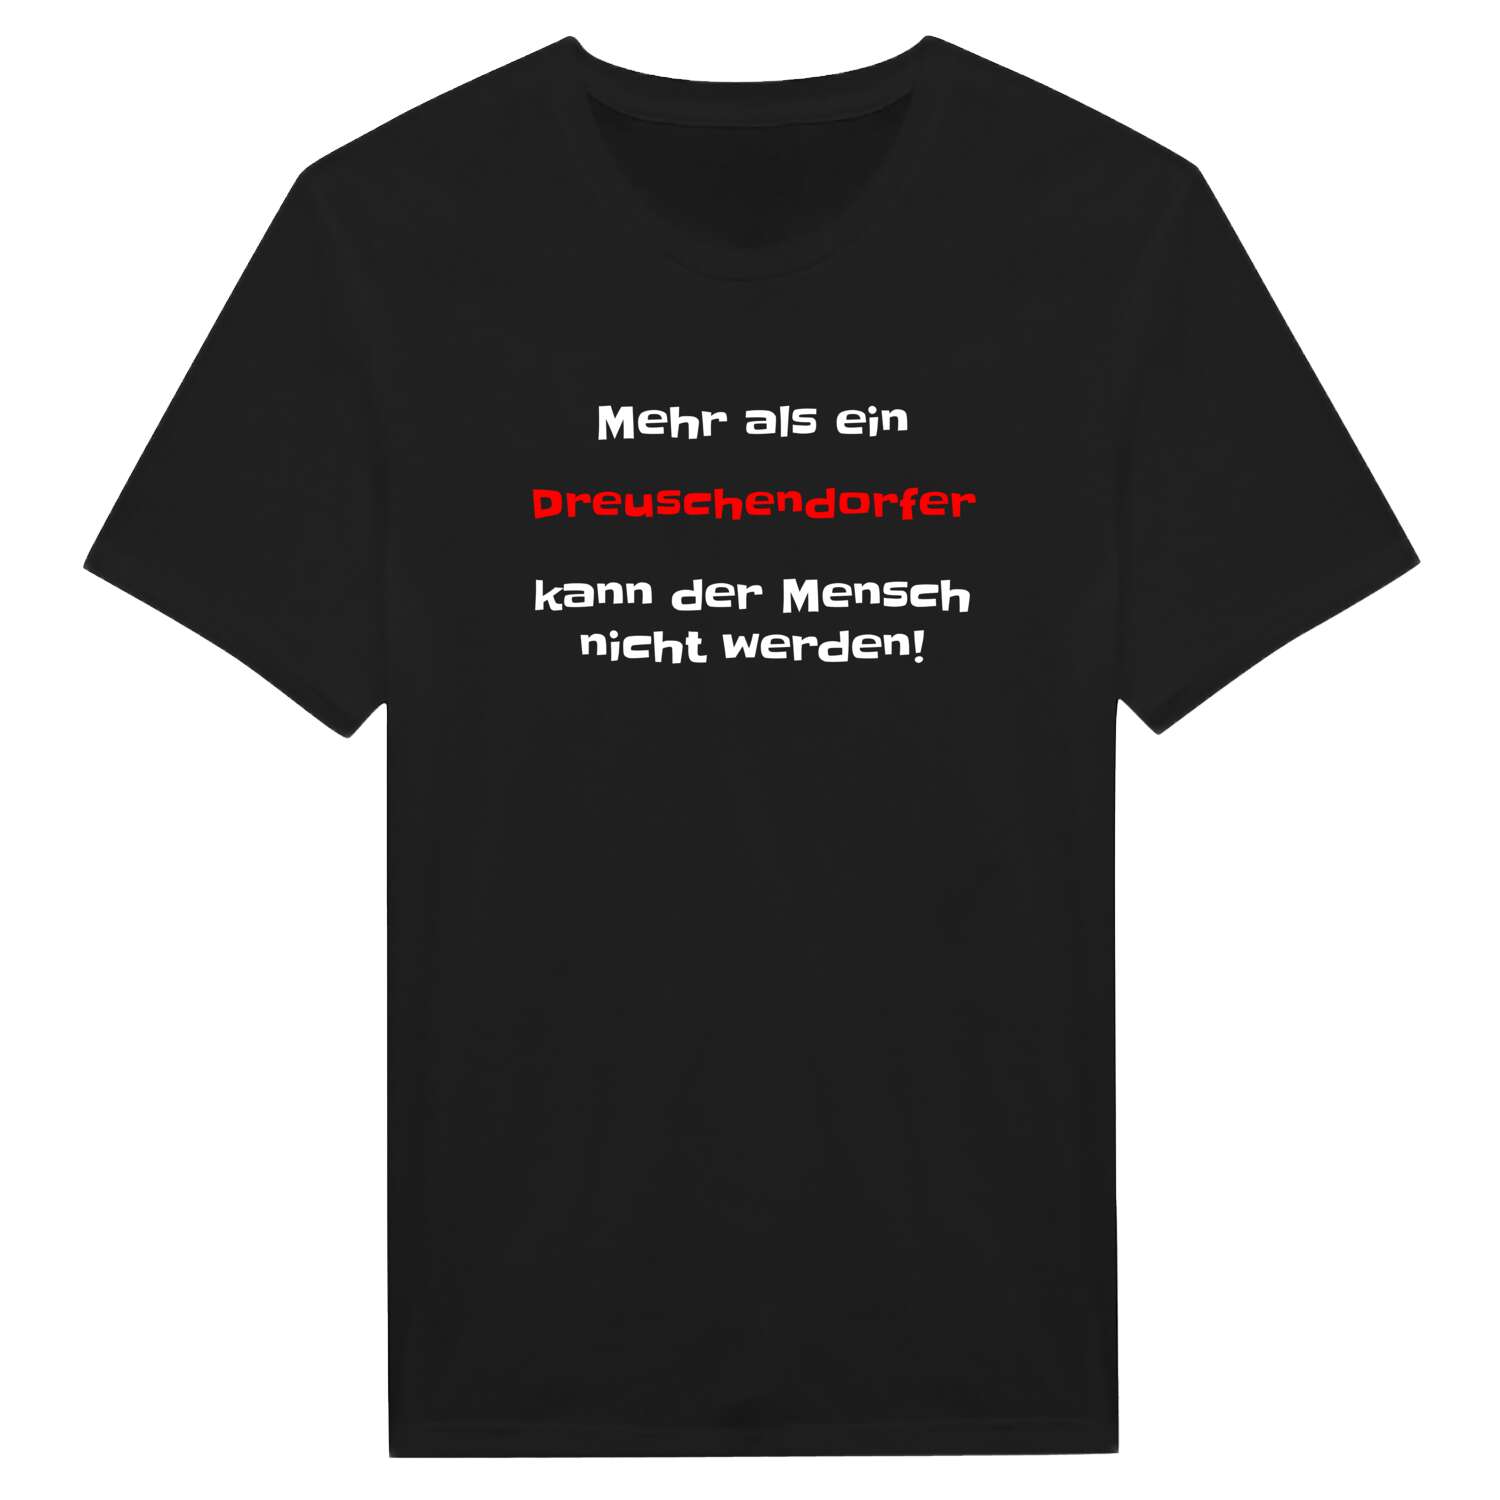 Dreuschendorf T-Shirt »Mehr als ein«